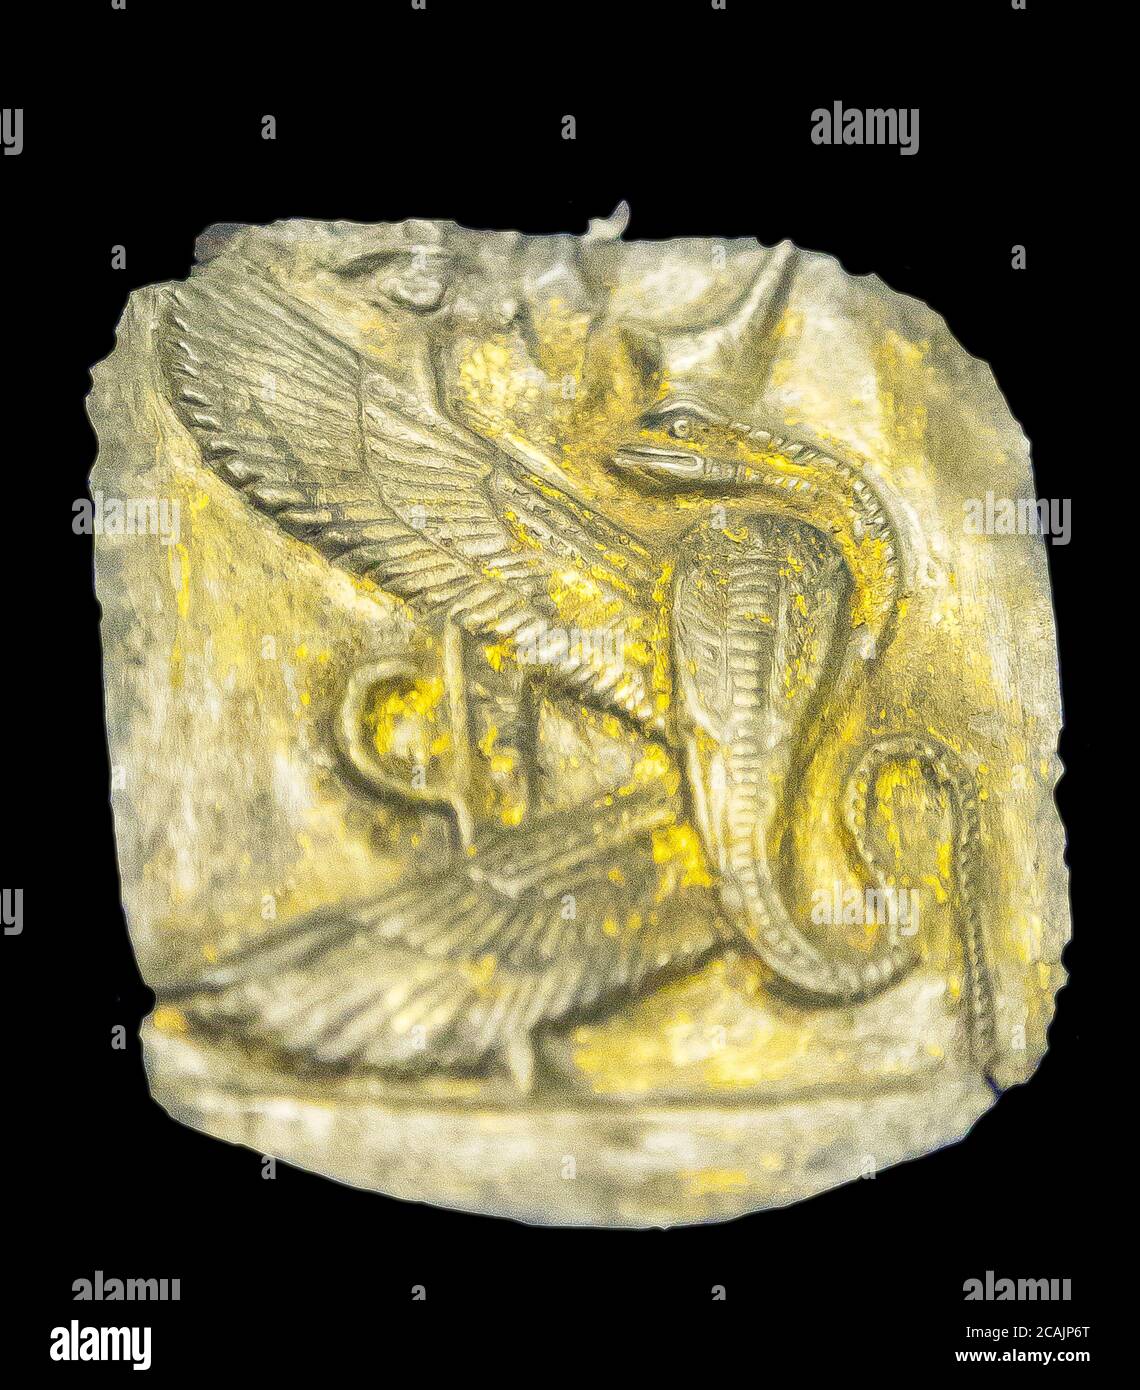 Le Caire, Musée égyptien, pendentif en argent montrant une déesse de serpent ailé. C'est une partie d'une paire : Déesses de la haute-Égypte et de la Basse-Égypte. Banque D'Images